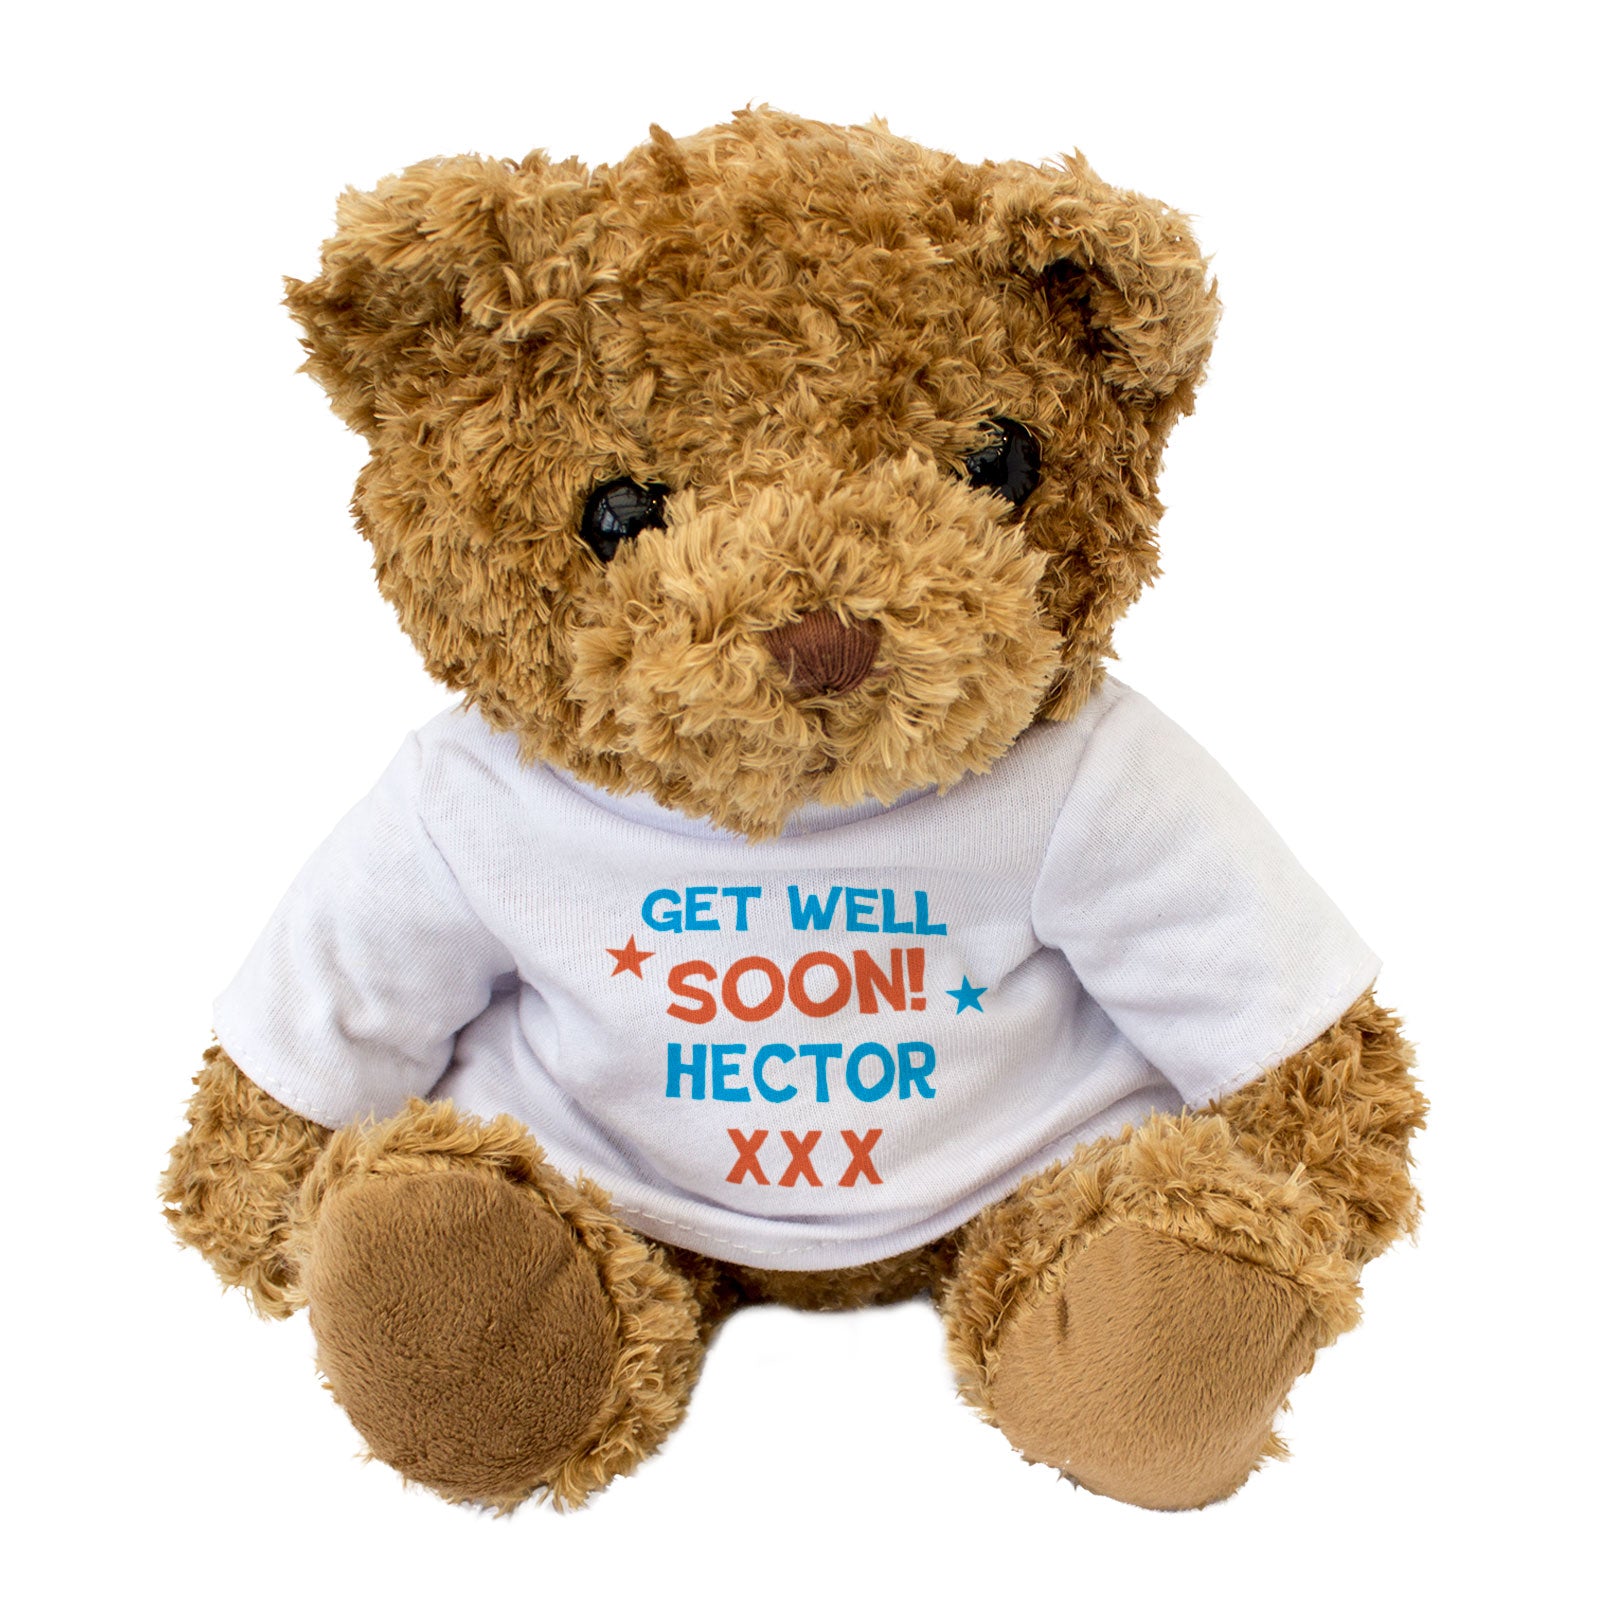 Get Well Soon Hector - Teddy Bear